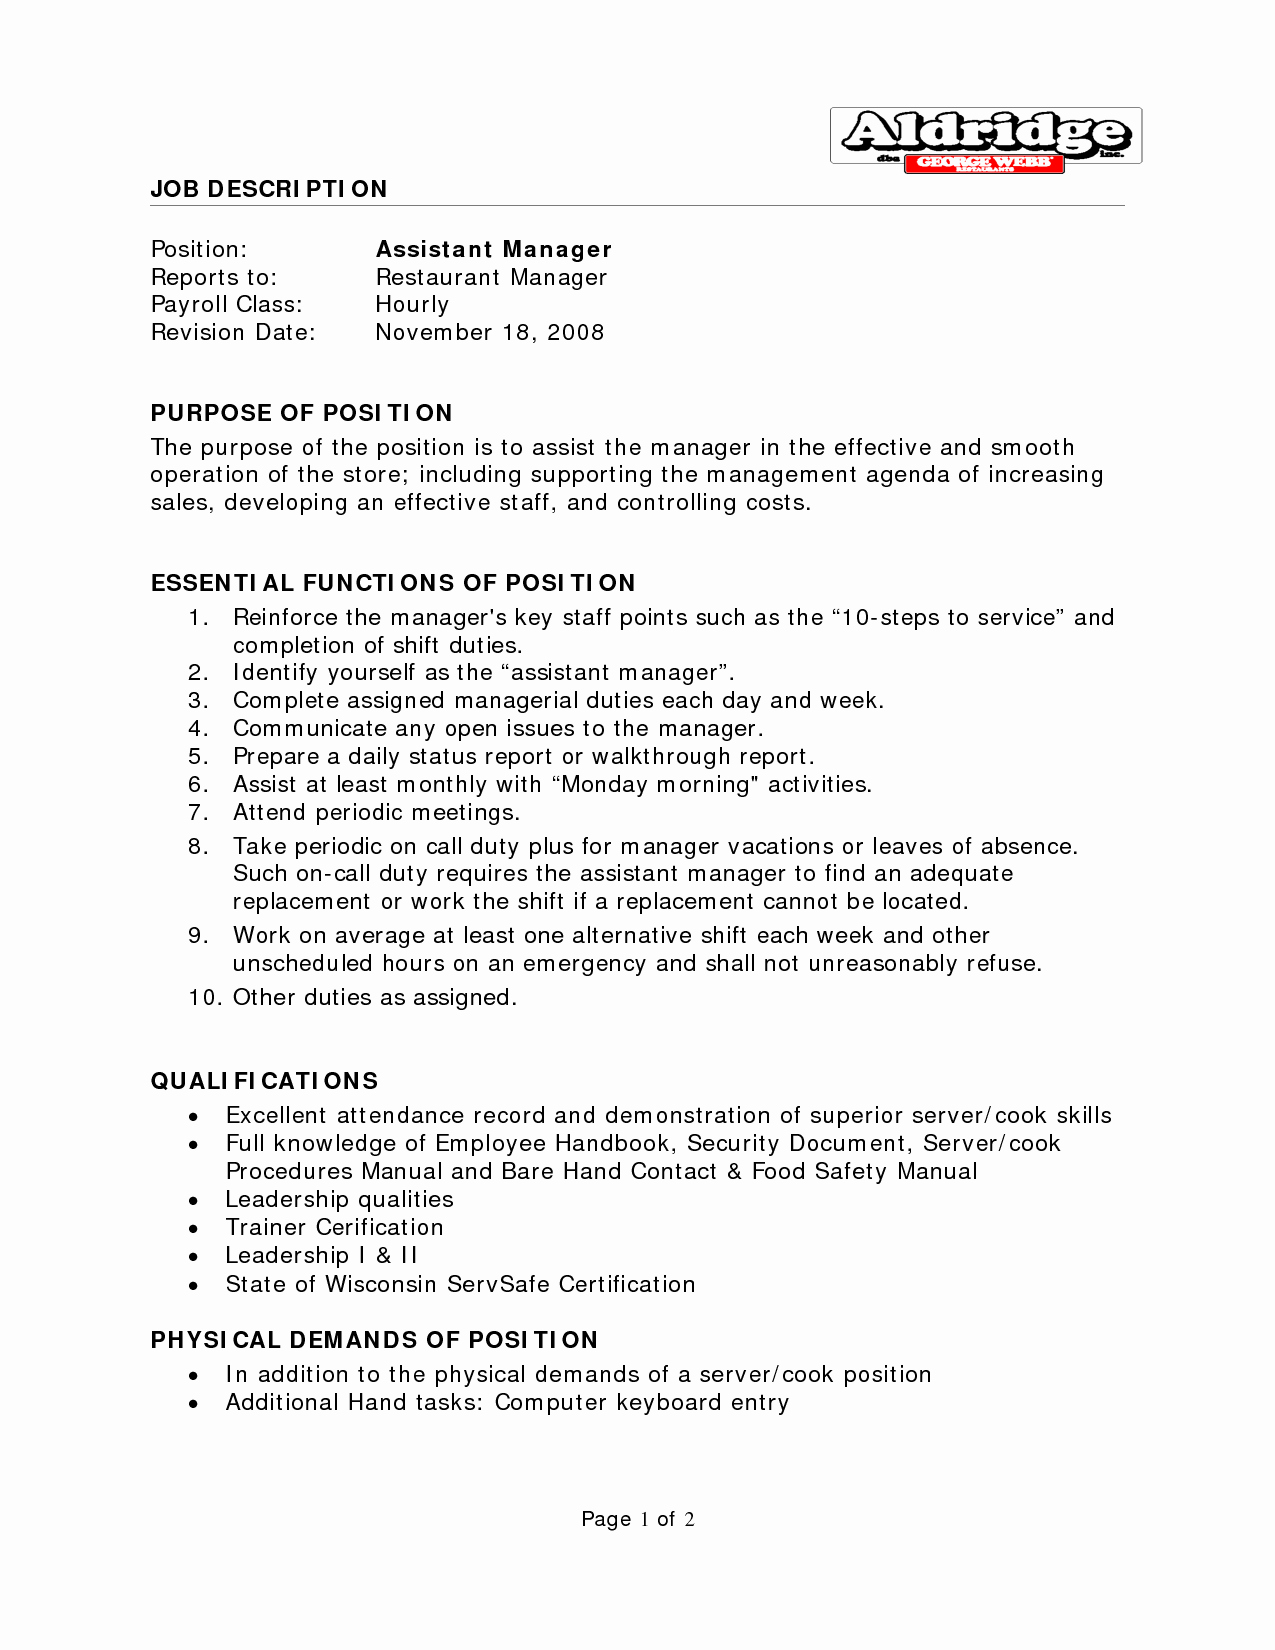 Assistant Property Manager Job Descriptions Beautiful Best S Of Restaurant Manager Job Description